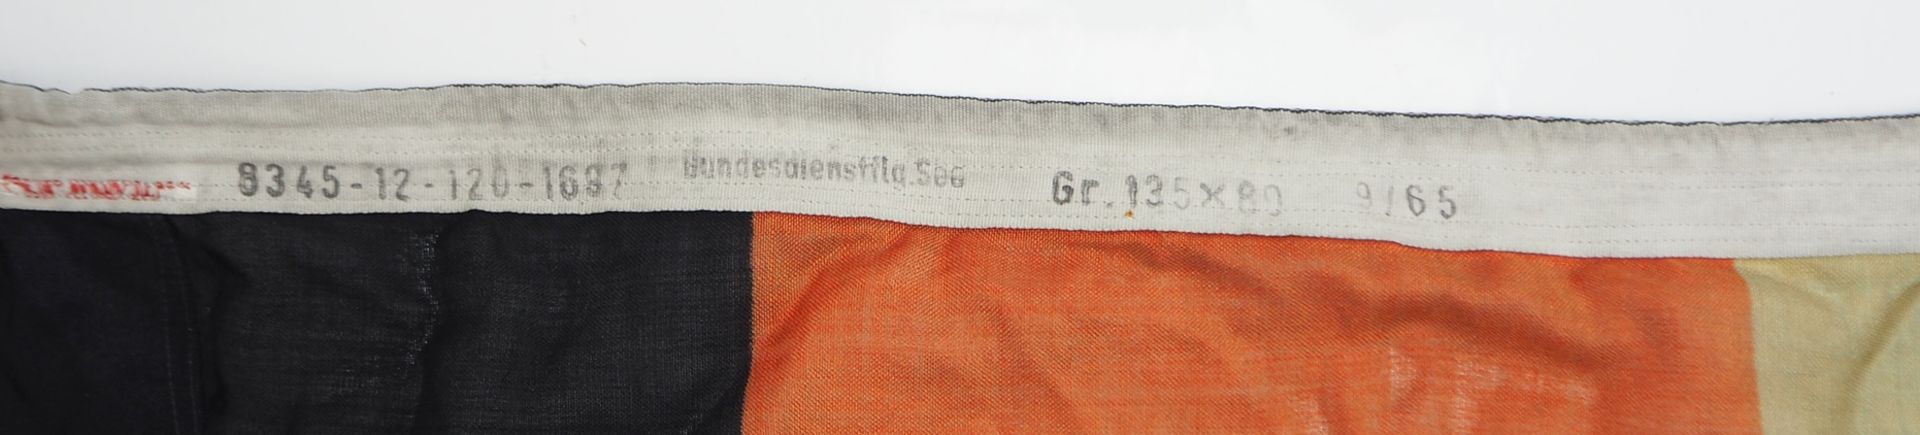 Bundesdienstflagge See - 135 x 80 cm. - Image 2 of 2